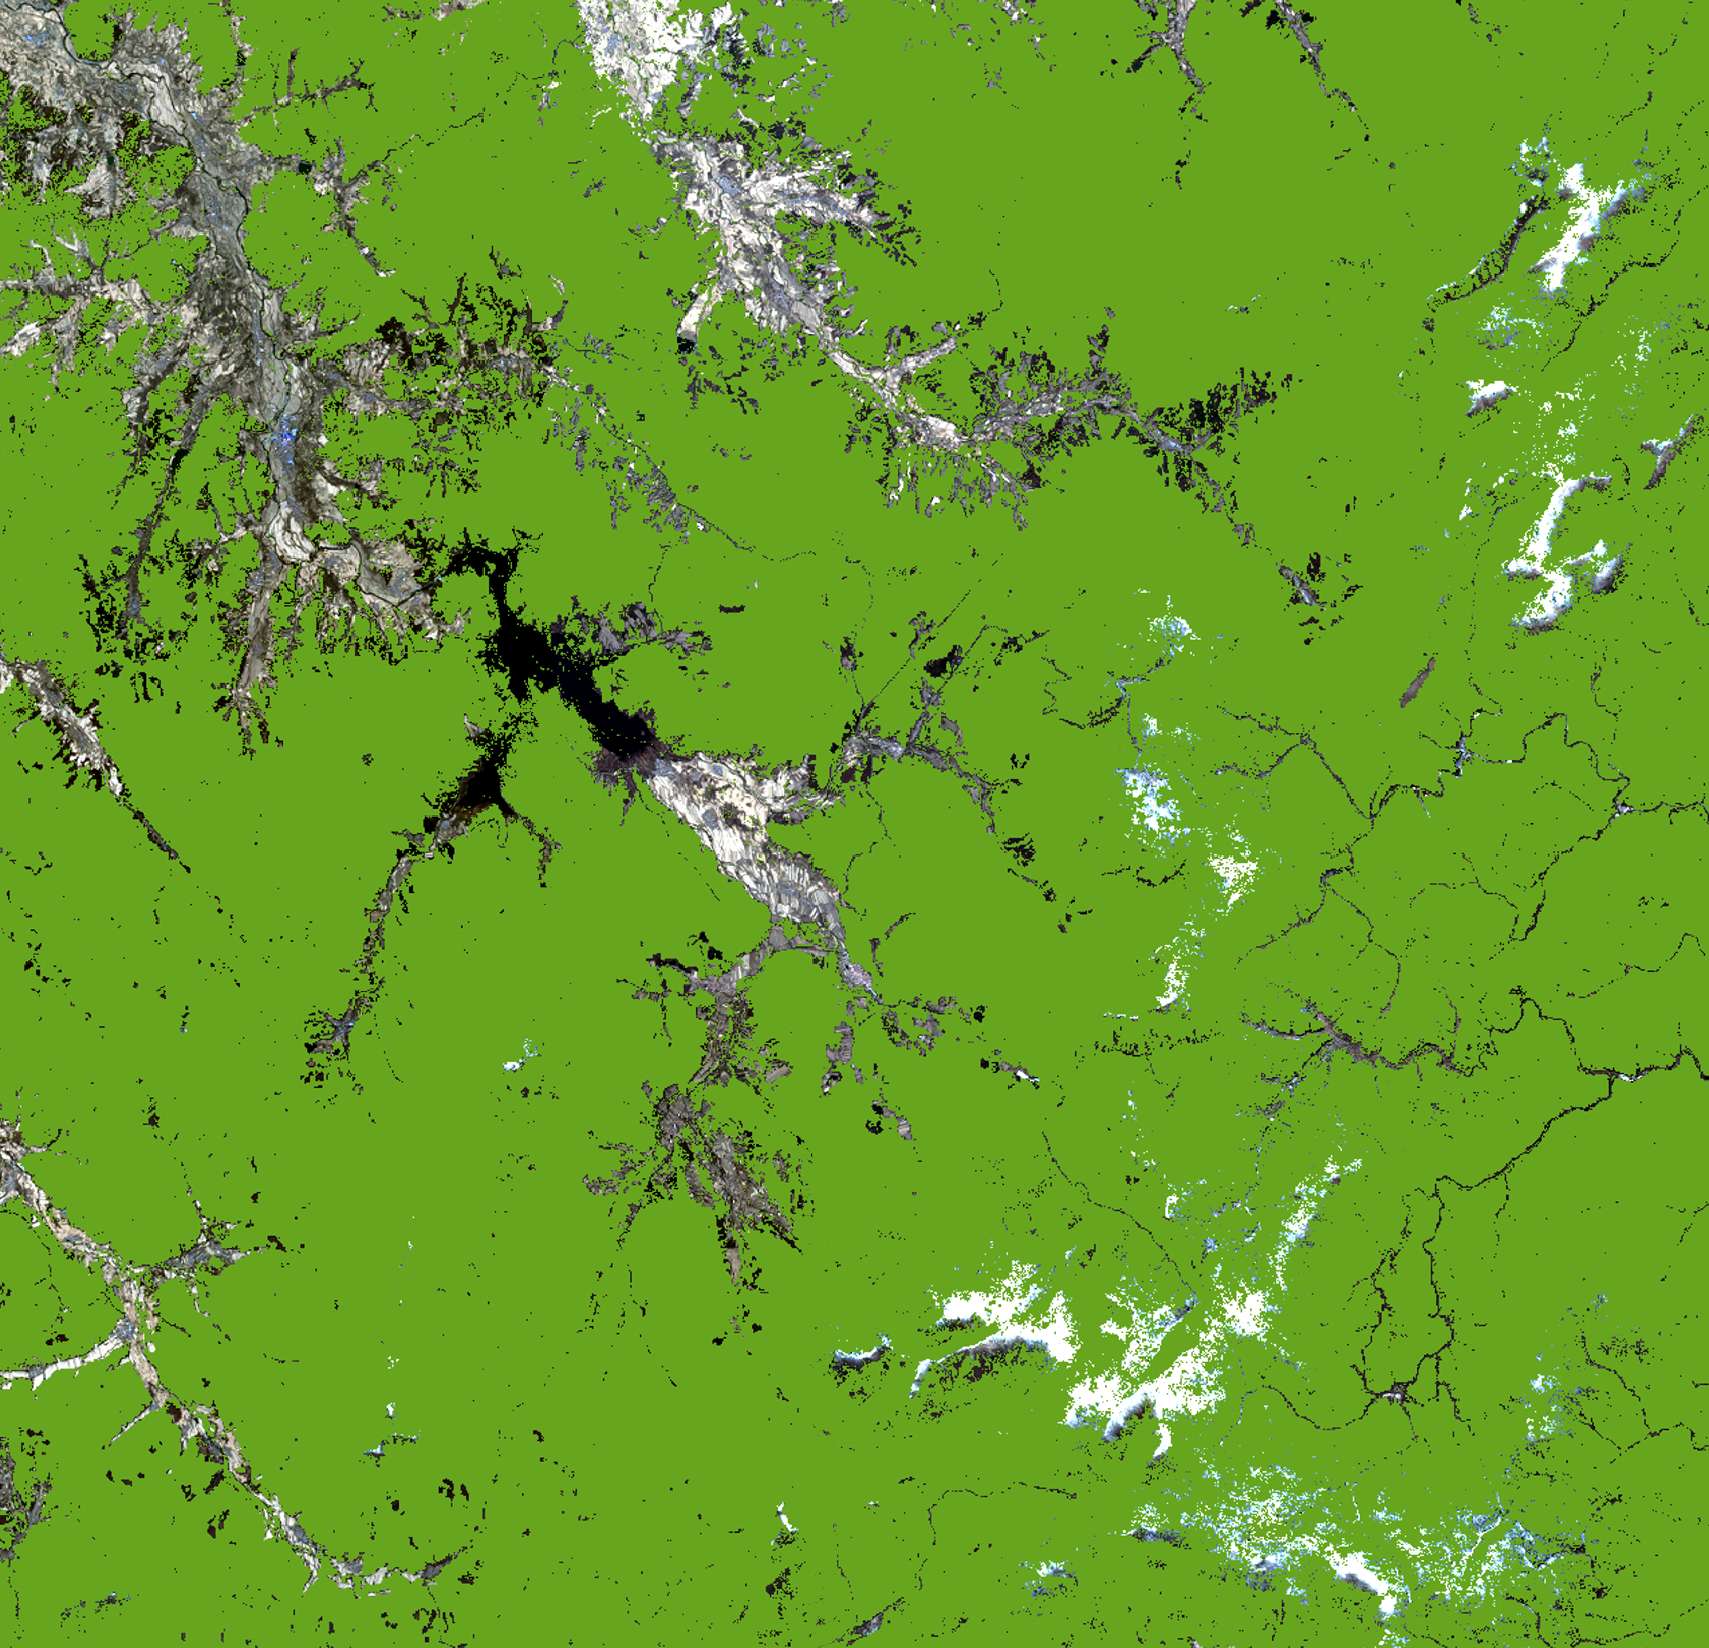 山河屯林业局林区2019.11.02拍摄卫星图-源自北京亿景图